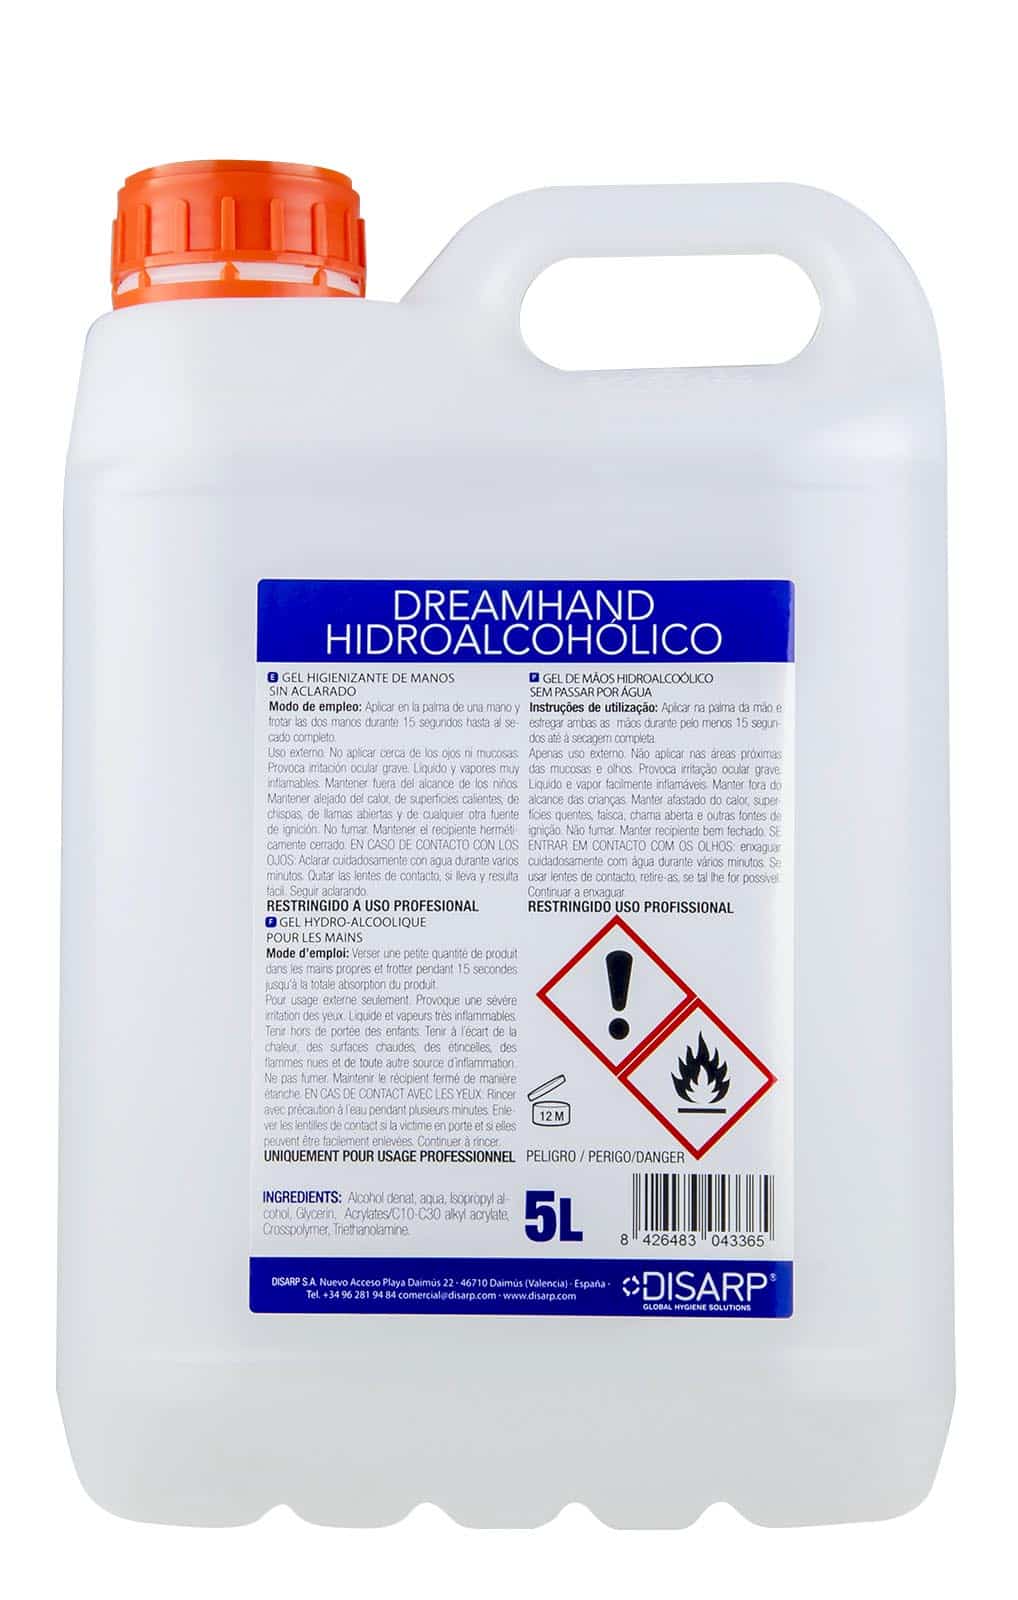 Geles Hidroalcohólicos para el lavado de manos: Cosméticos VS Biocidas